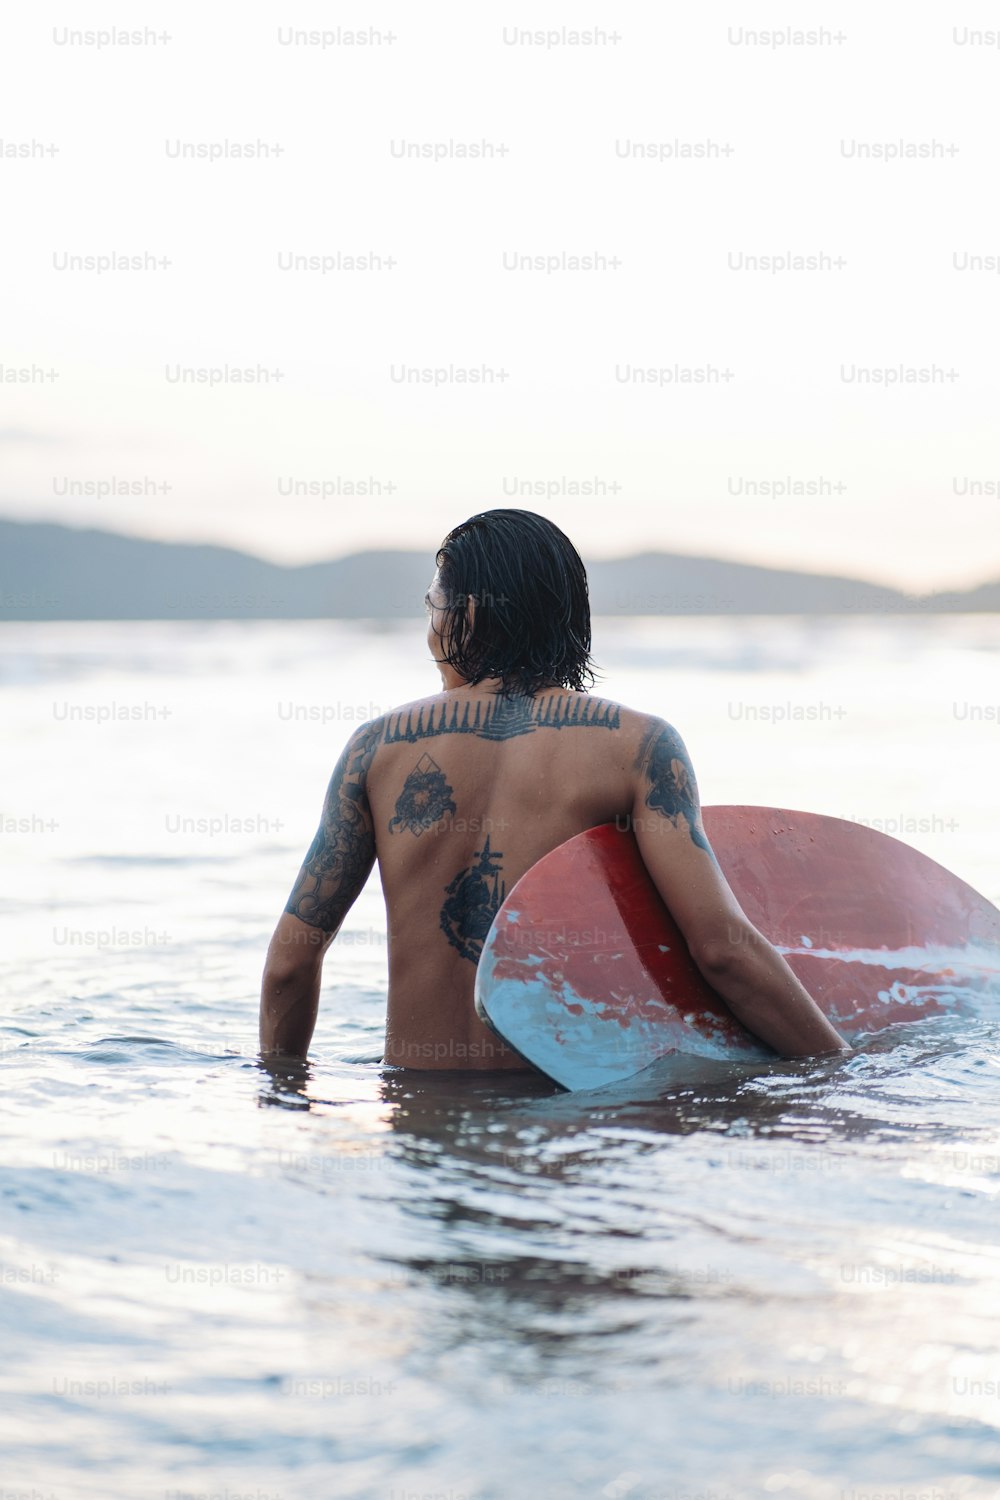 ein mann, der ein surfbrett im wasser hält